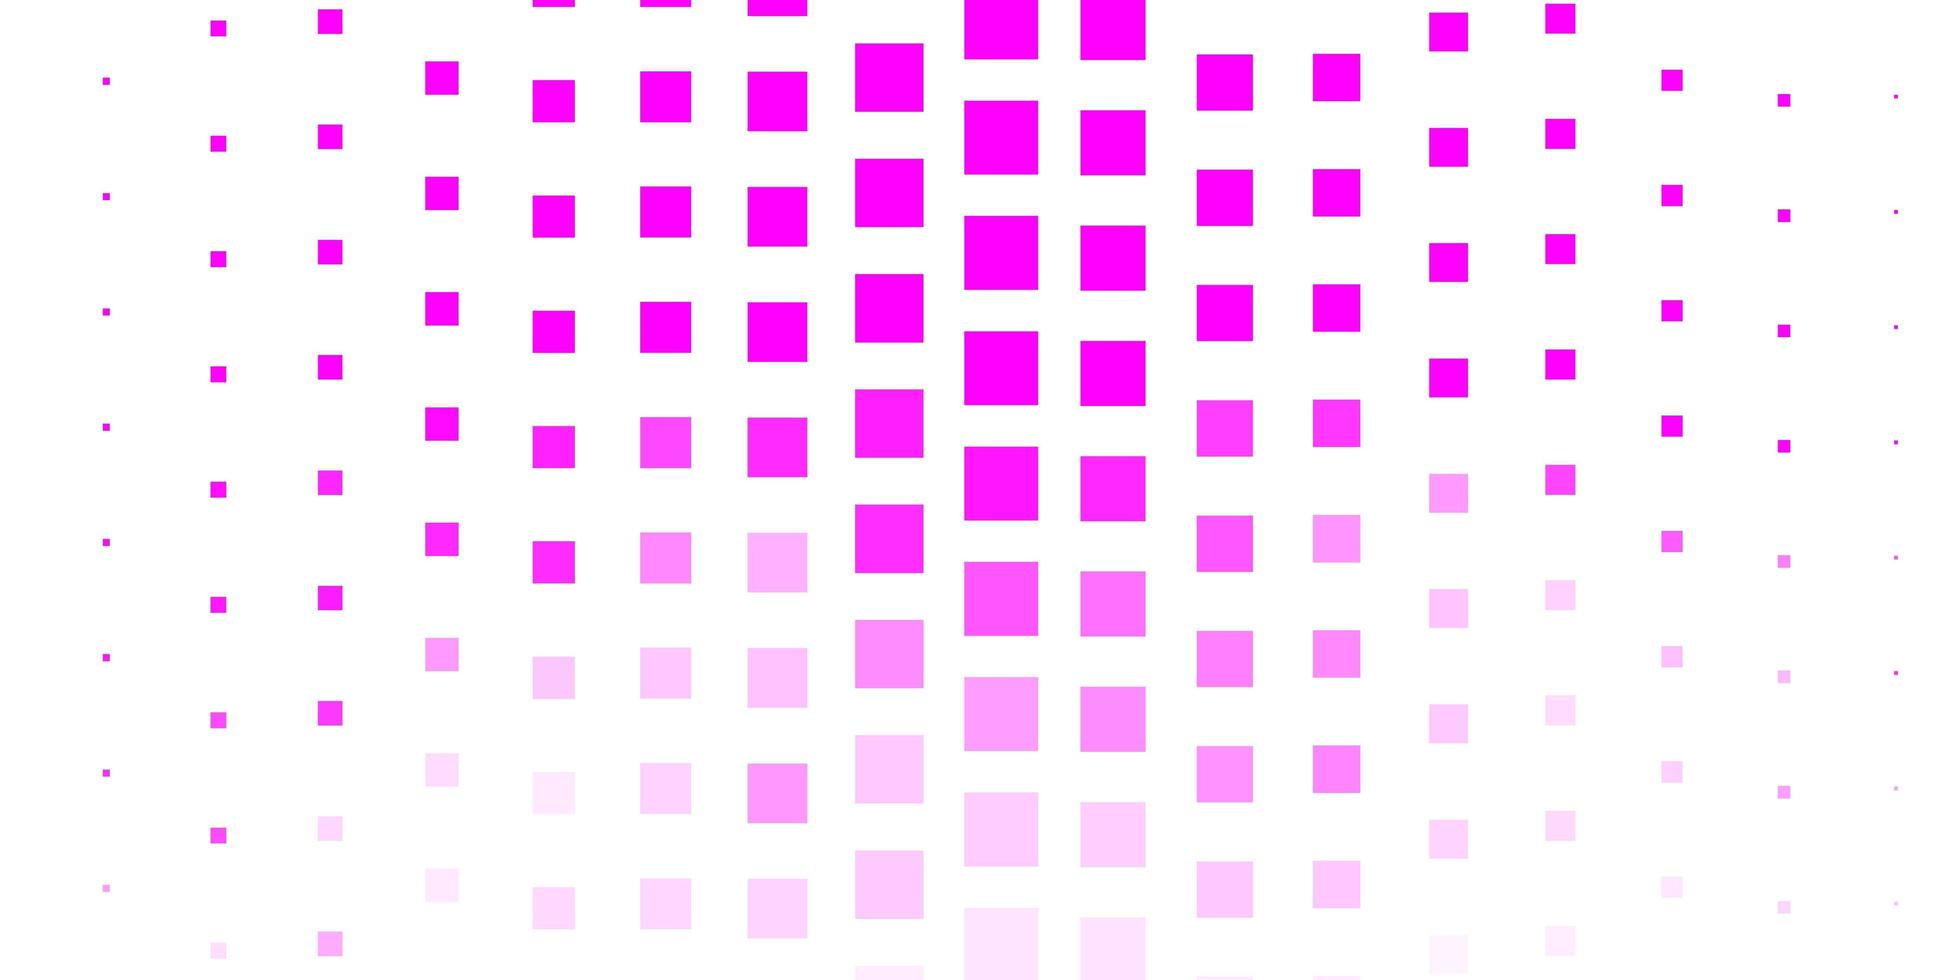 fond de vecteur rose clair avec des rectangles.